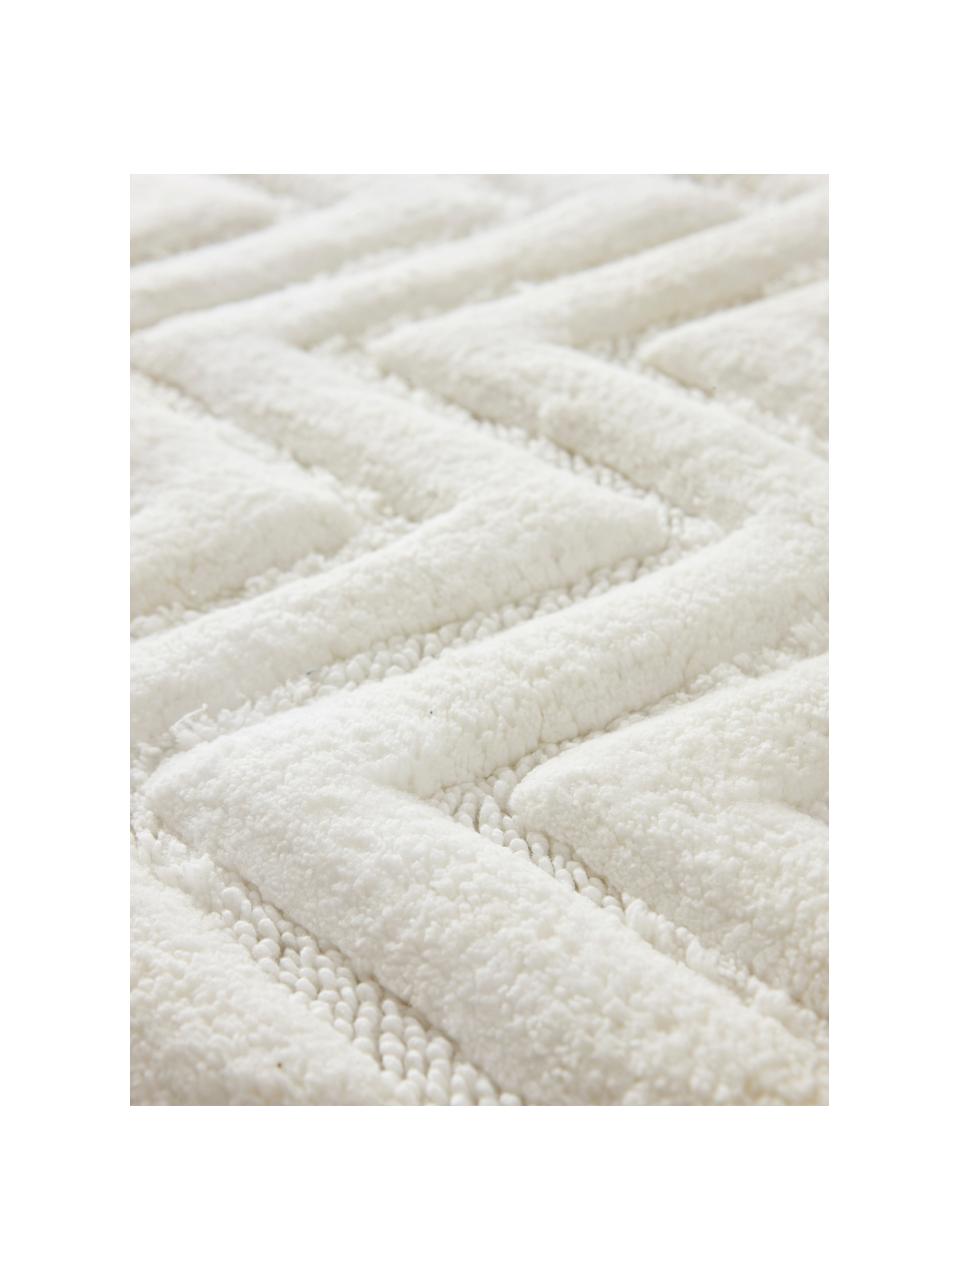 Flauschiger Badvorleger Arild in Weiß, 100% Baumwolle, Gebrochenes Weiß, 50 x 80 cm